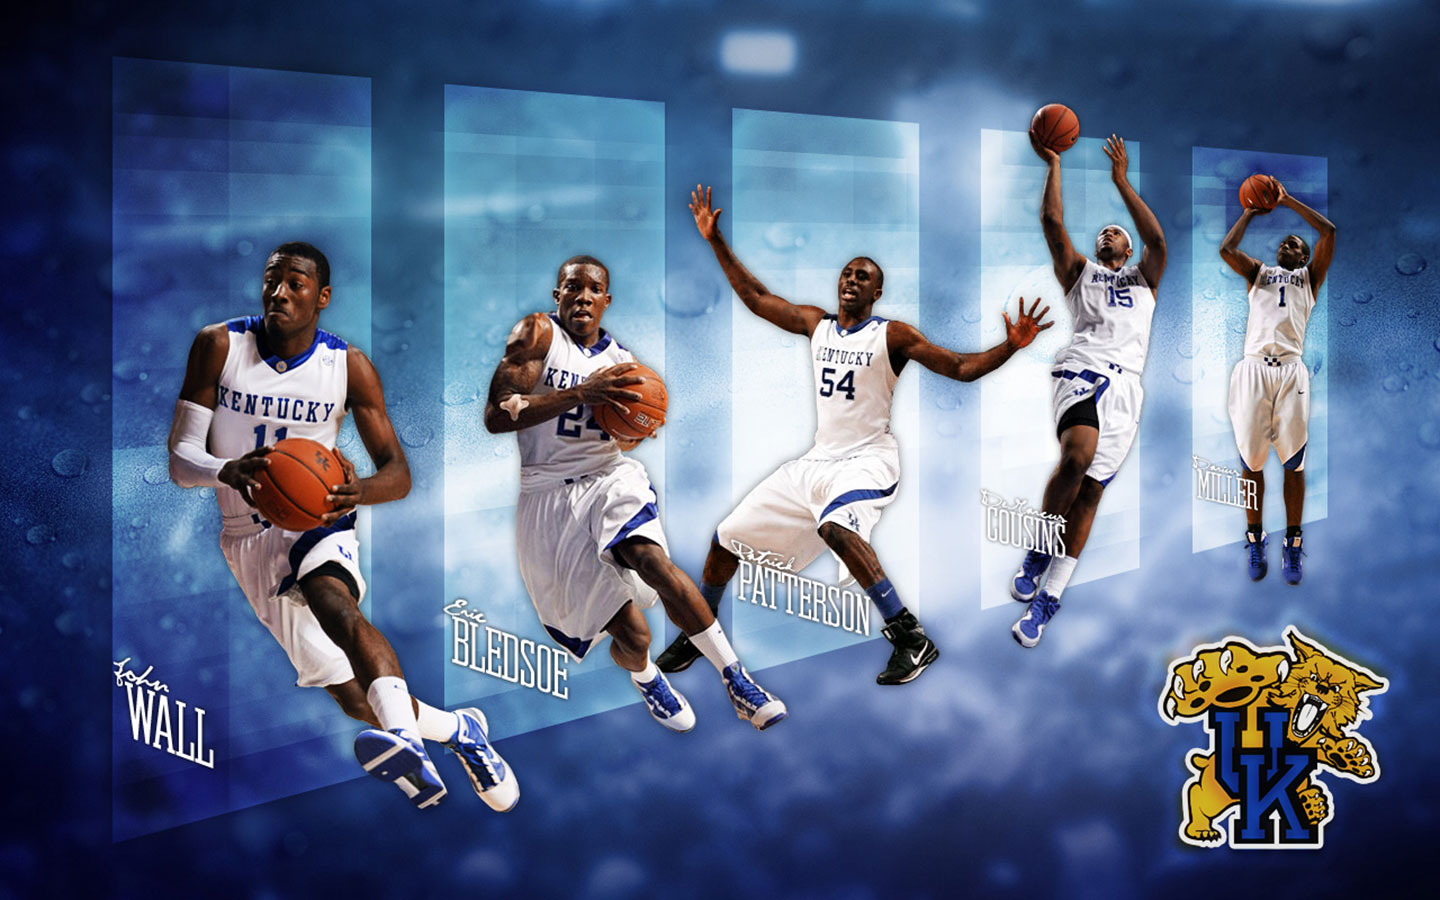 Kentucky basketball wallpaper | danasrhg.top